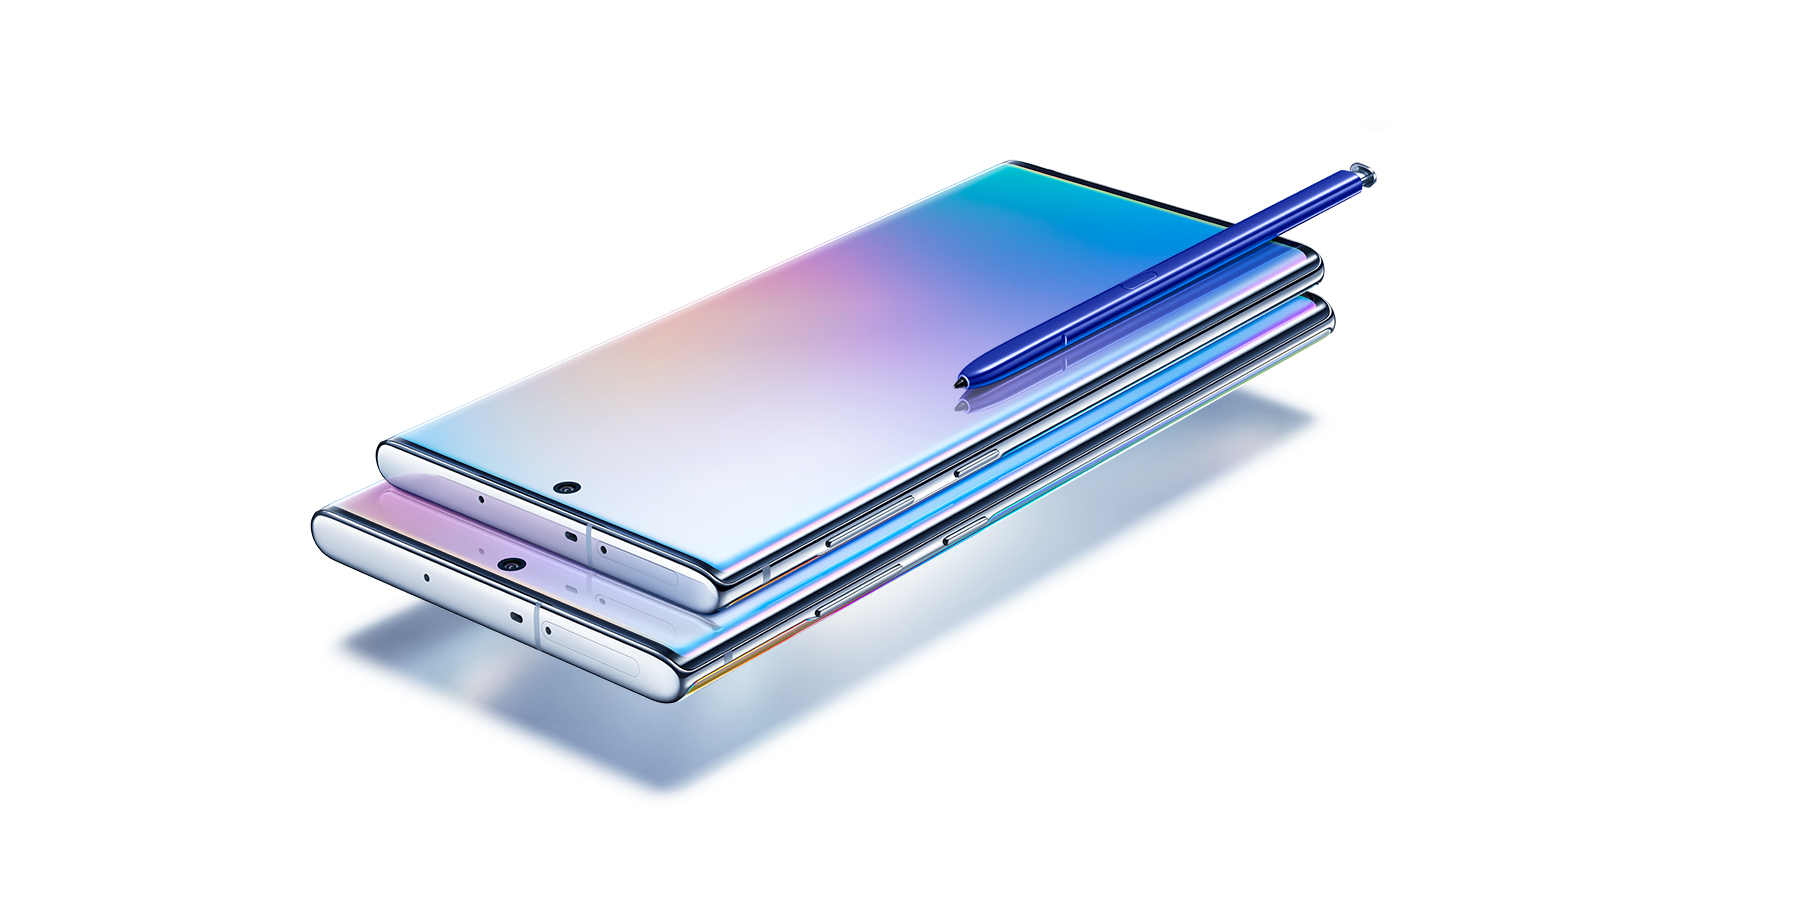 Moviles Online Nicaragua - Revoluciona tu experiencia con Samsung Galaxy Note  10 Plus, potente y totalmente renovado, ten el poder de una laptop, con un  tamaño muy similar a un celular o